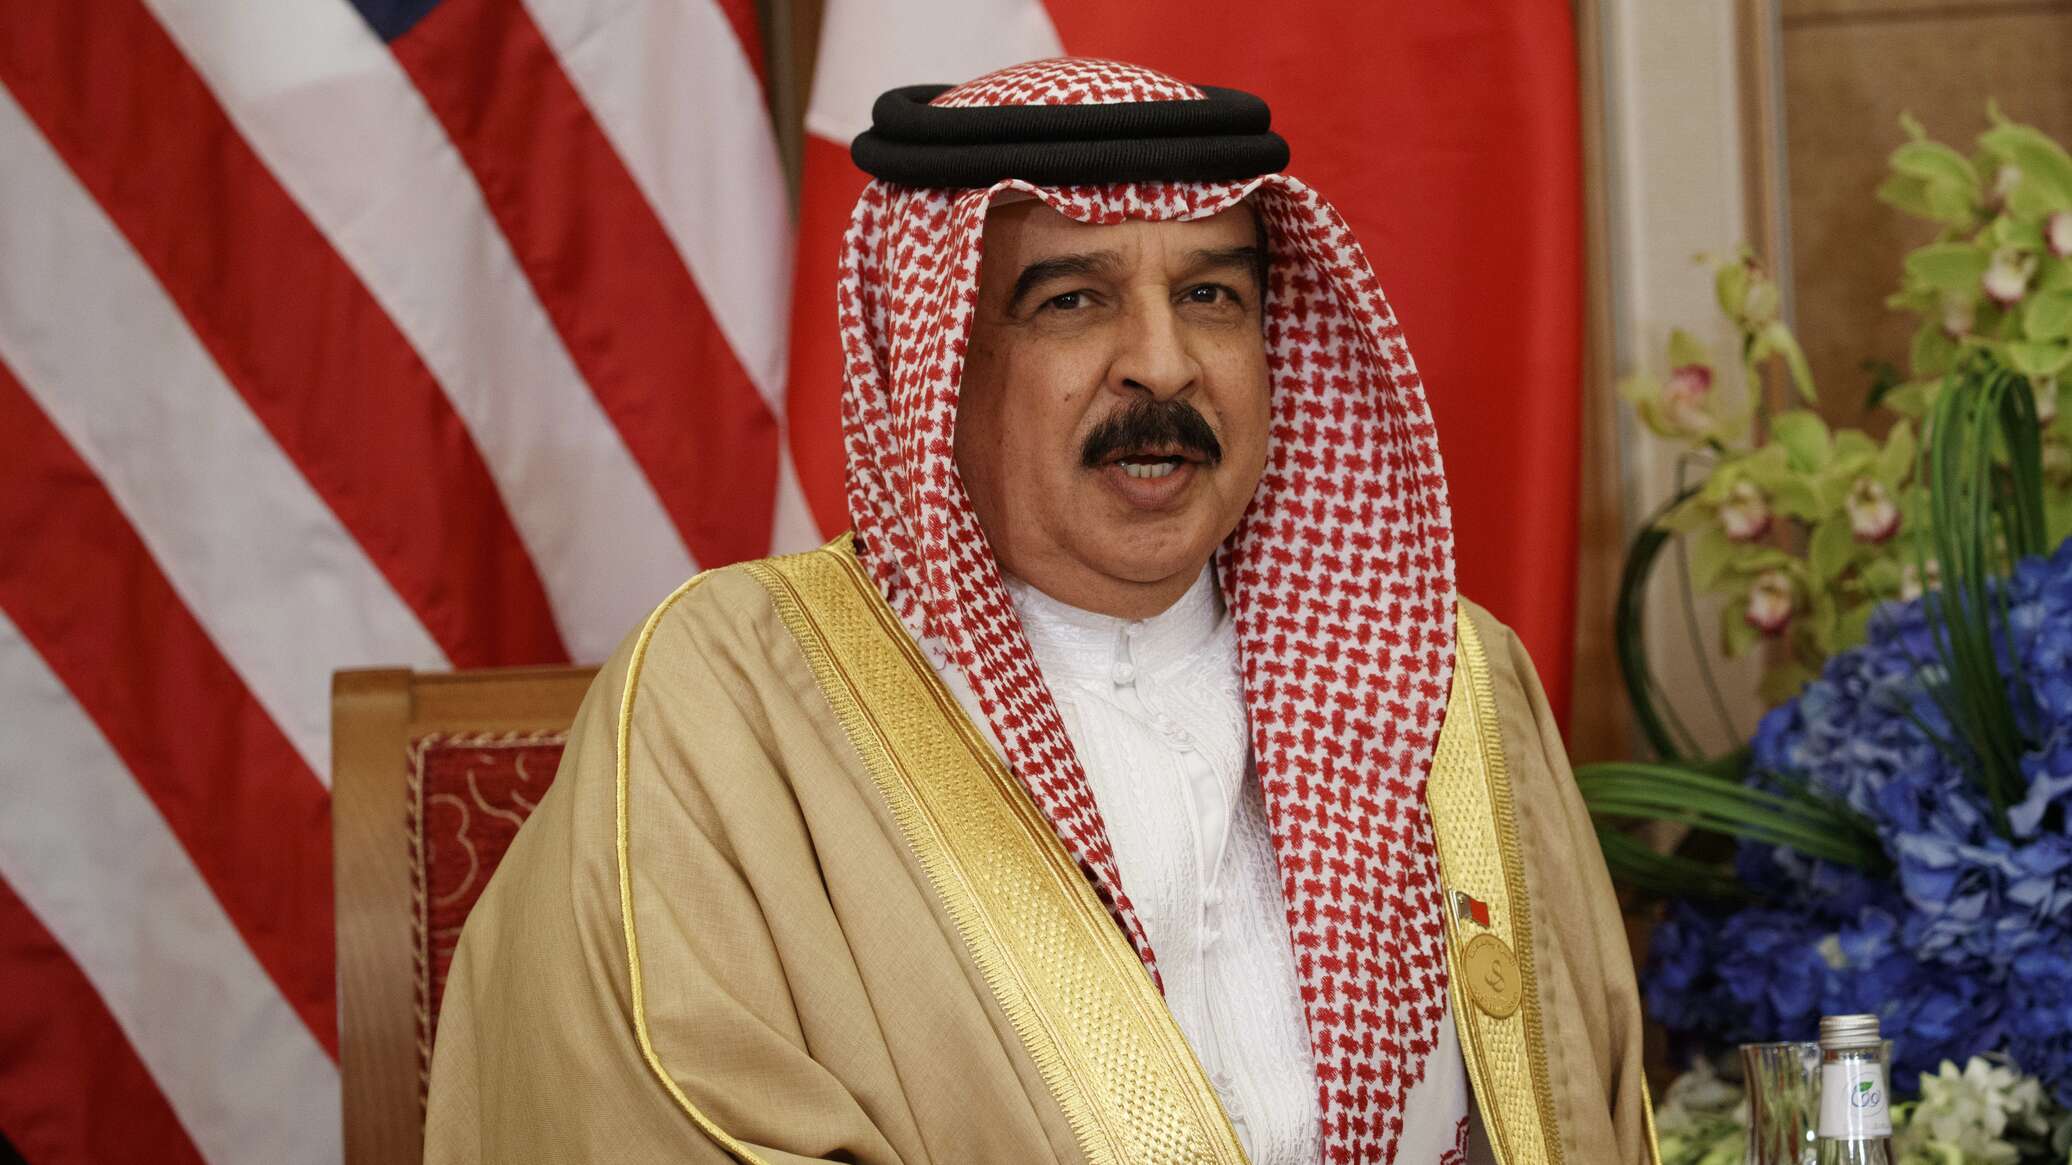 ملك البحرين يهنئ الرئيس الروسي بمناسبة فوزه بفترة رئاسية جديدة... مشيدا بمستوى العلاقات الثنائية